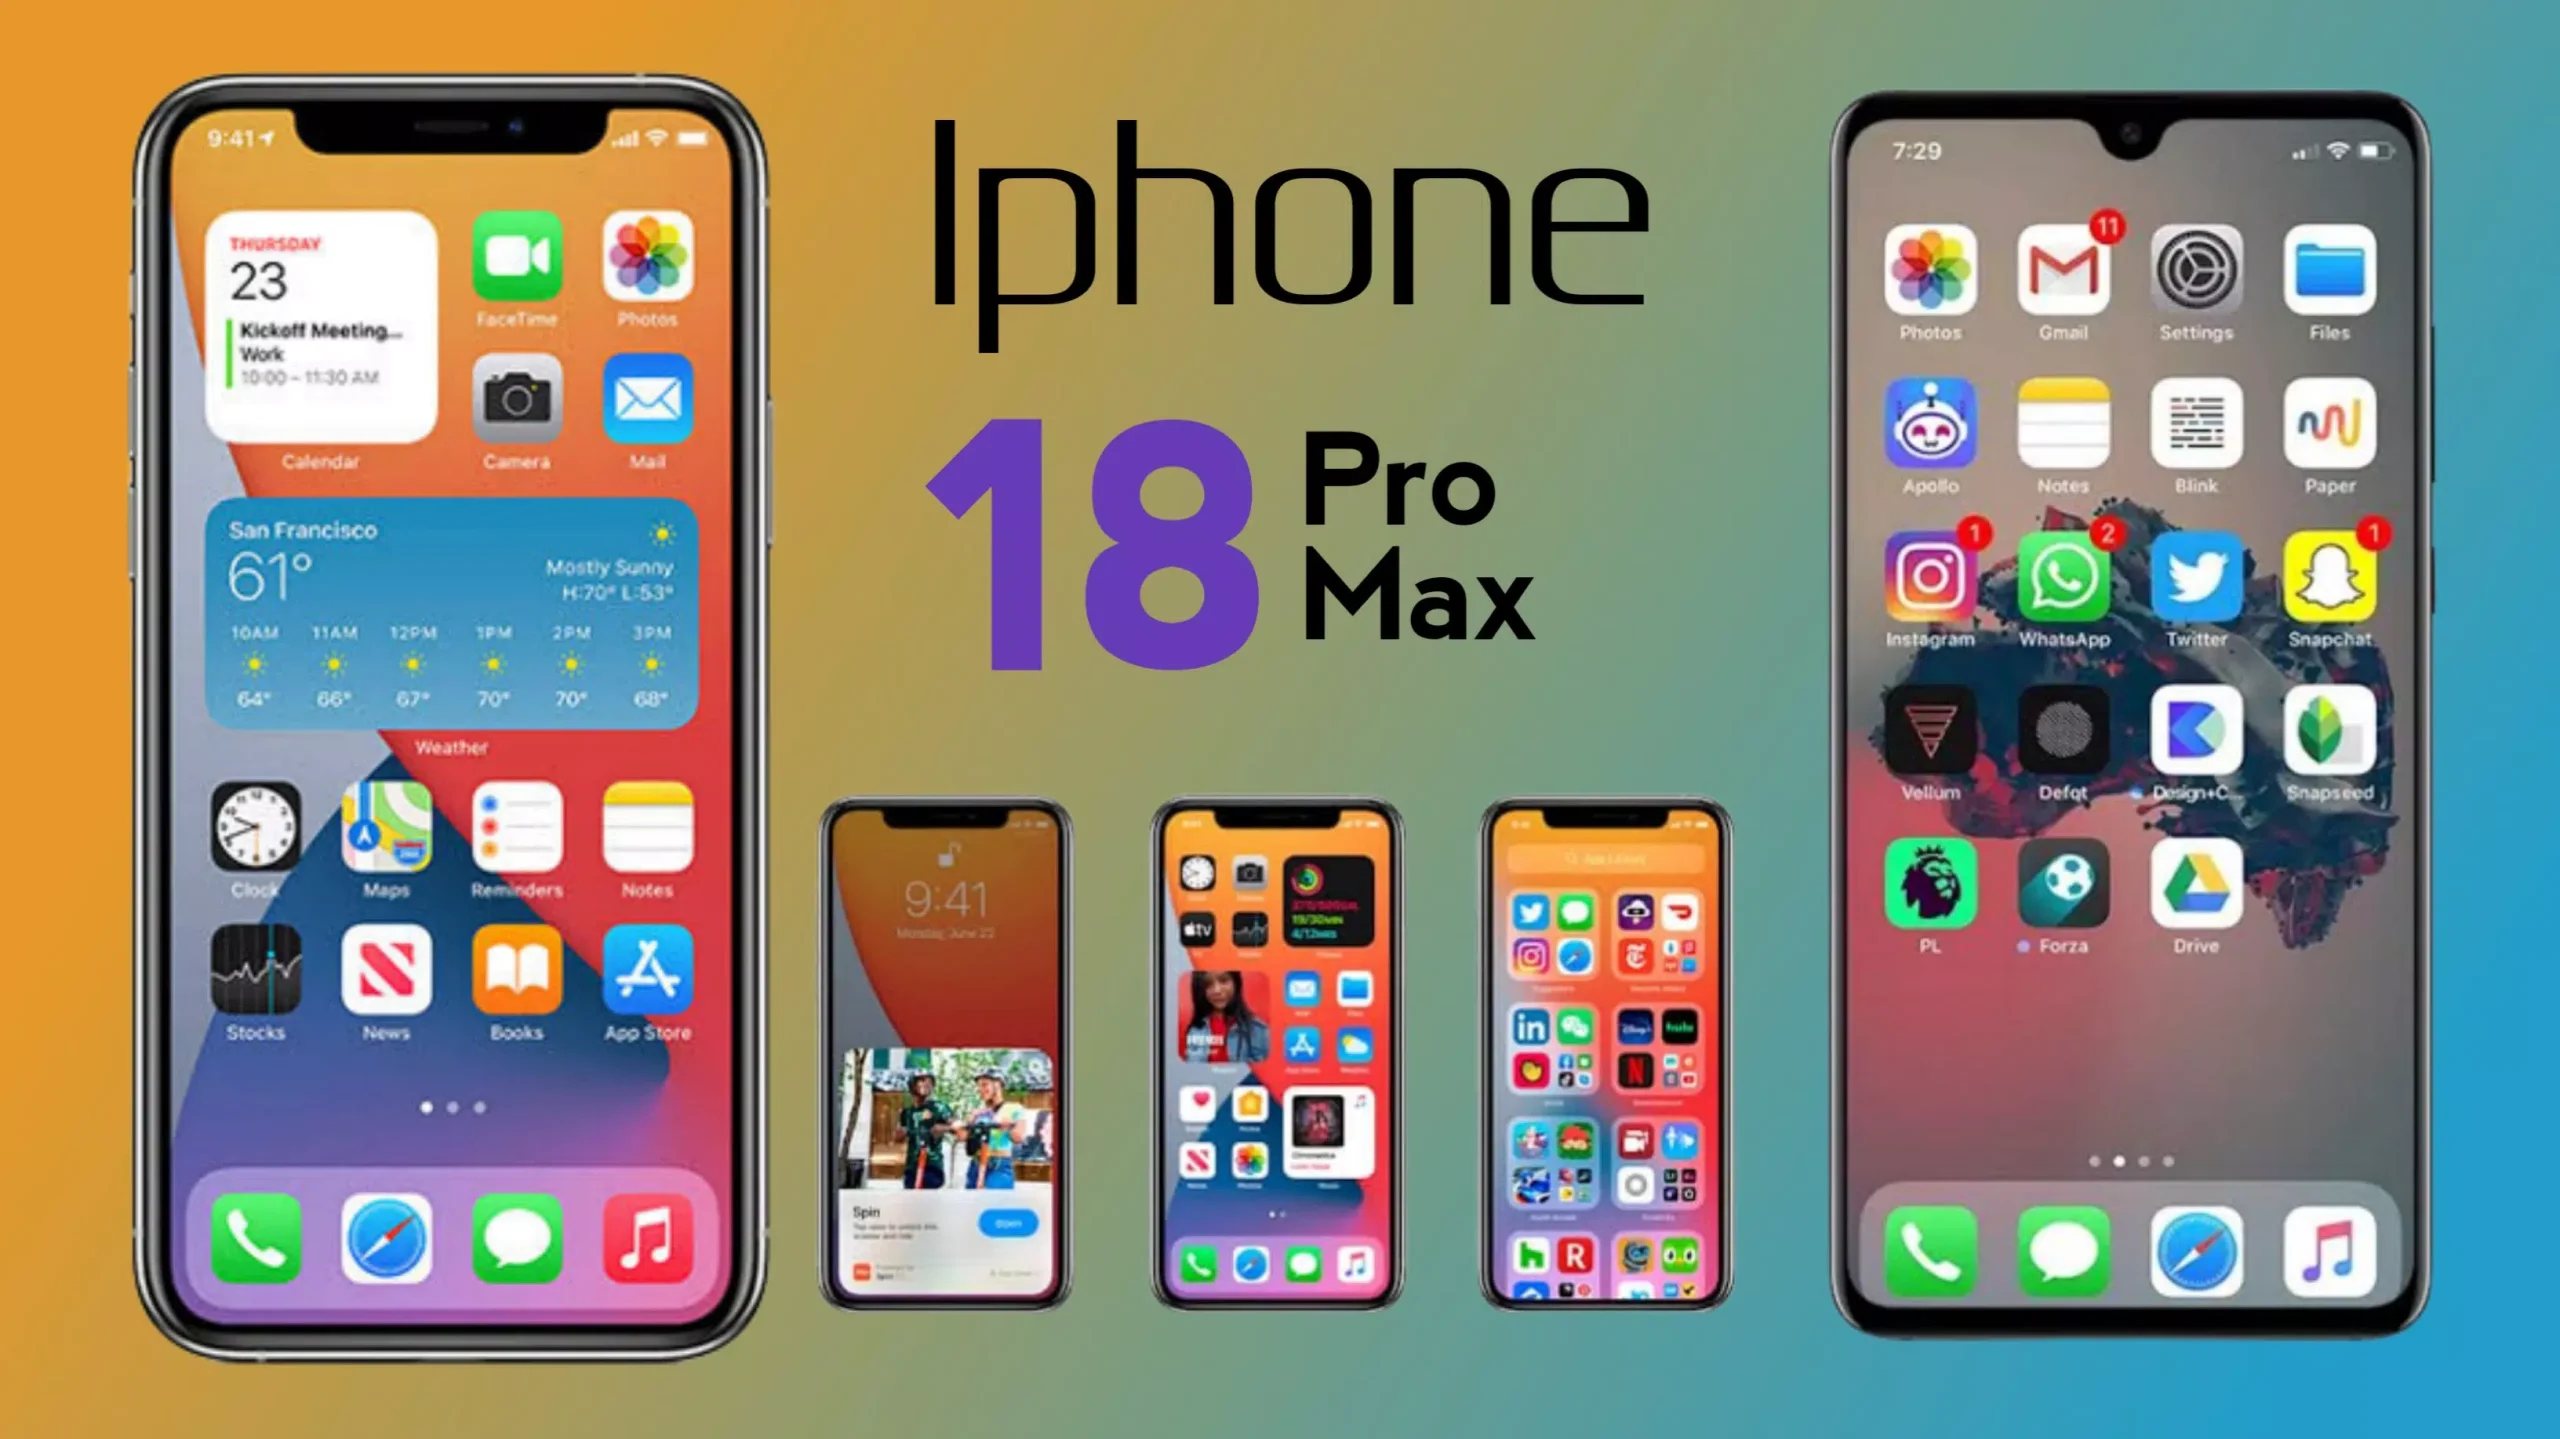 IPhone 18 Pro Max